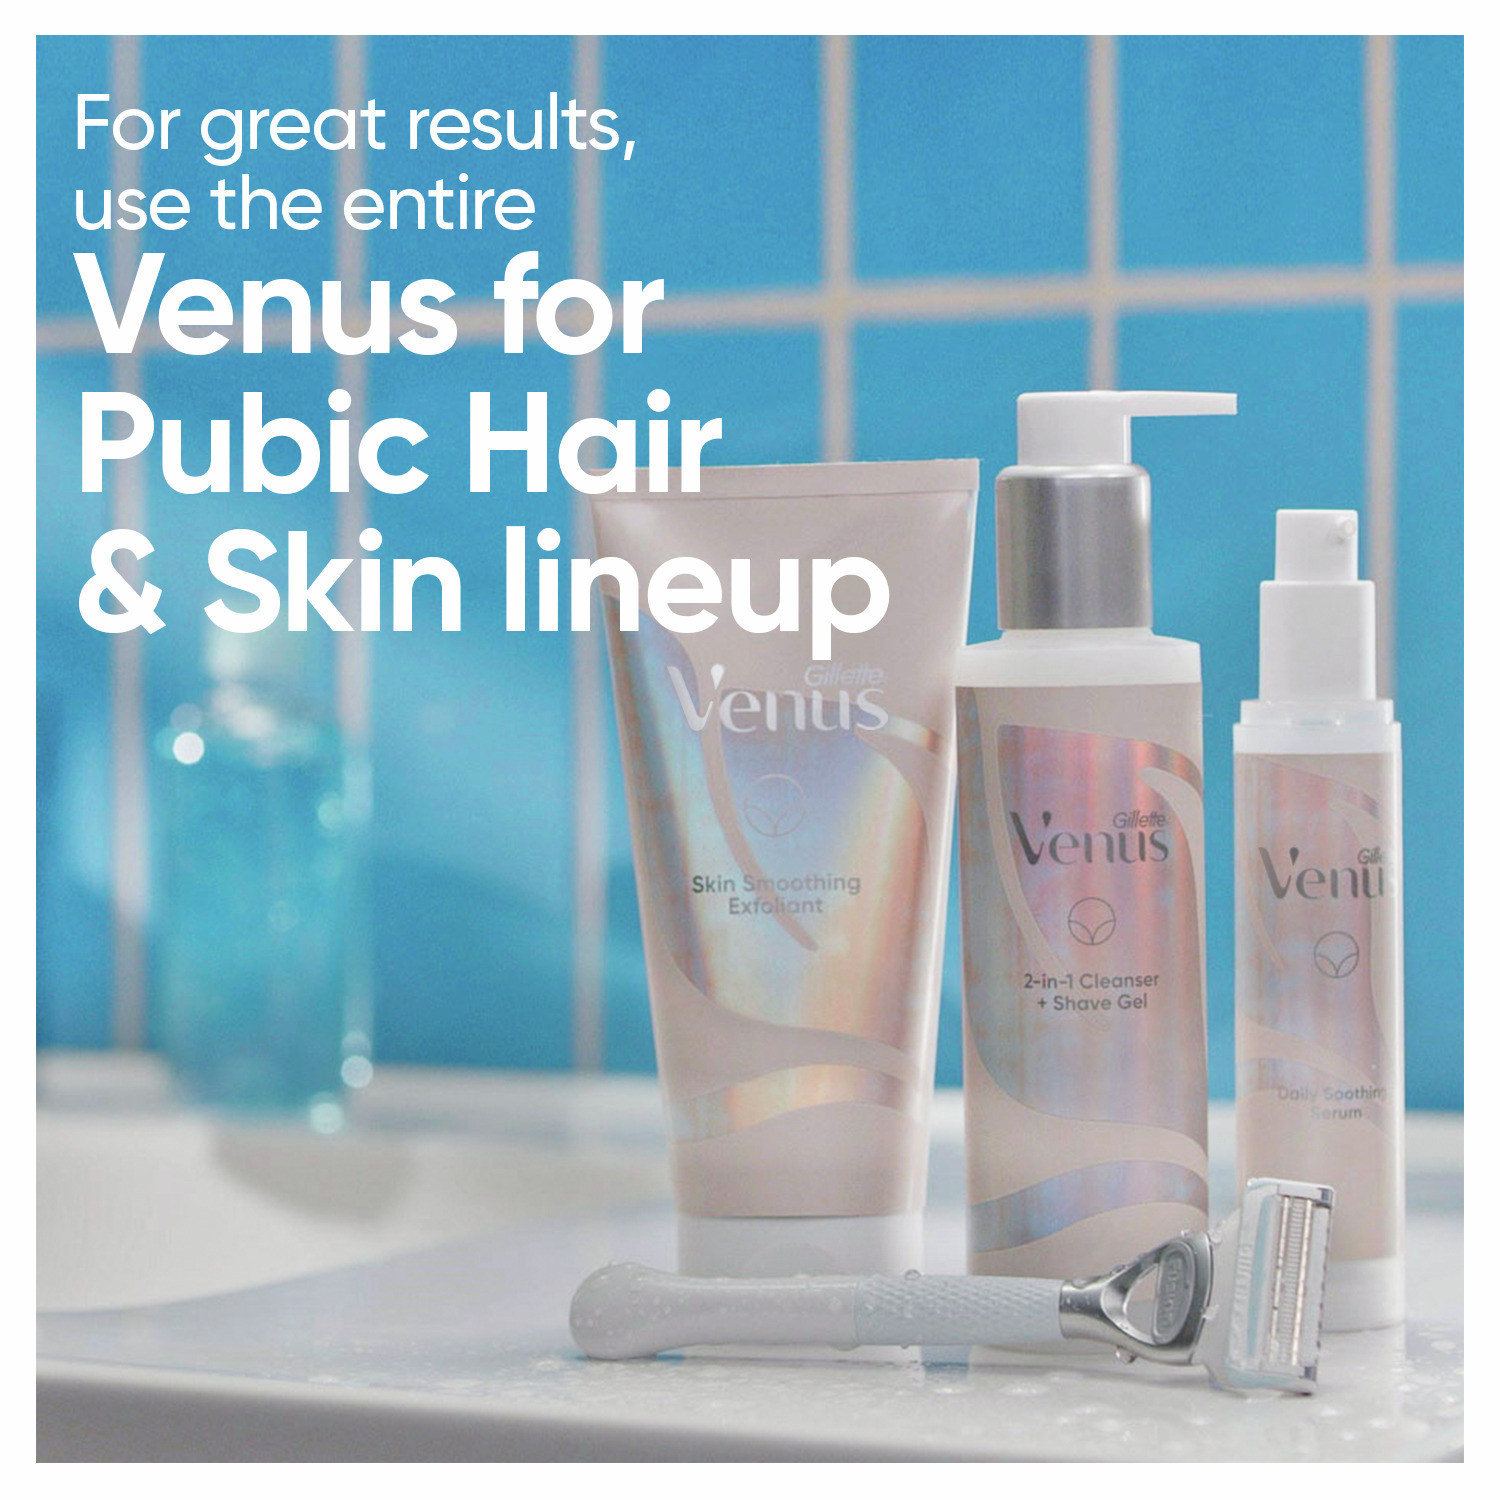 Venus’ Pubic Hair & Skin Razor